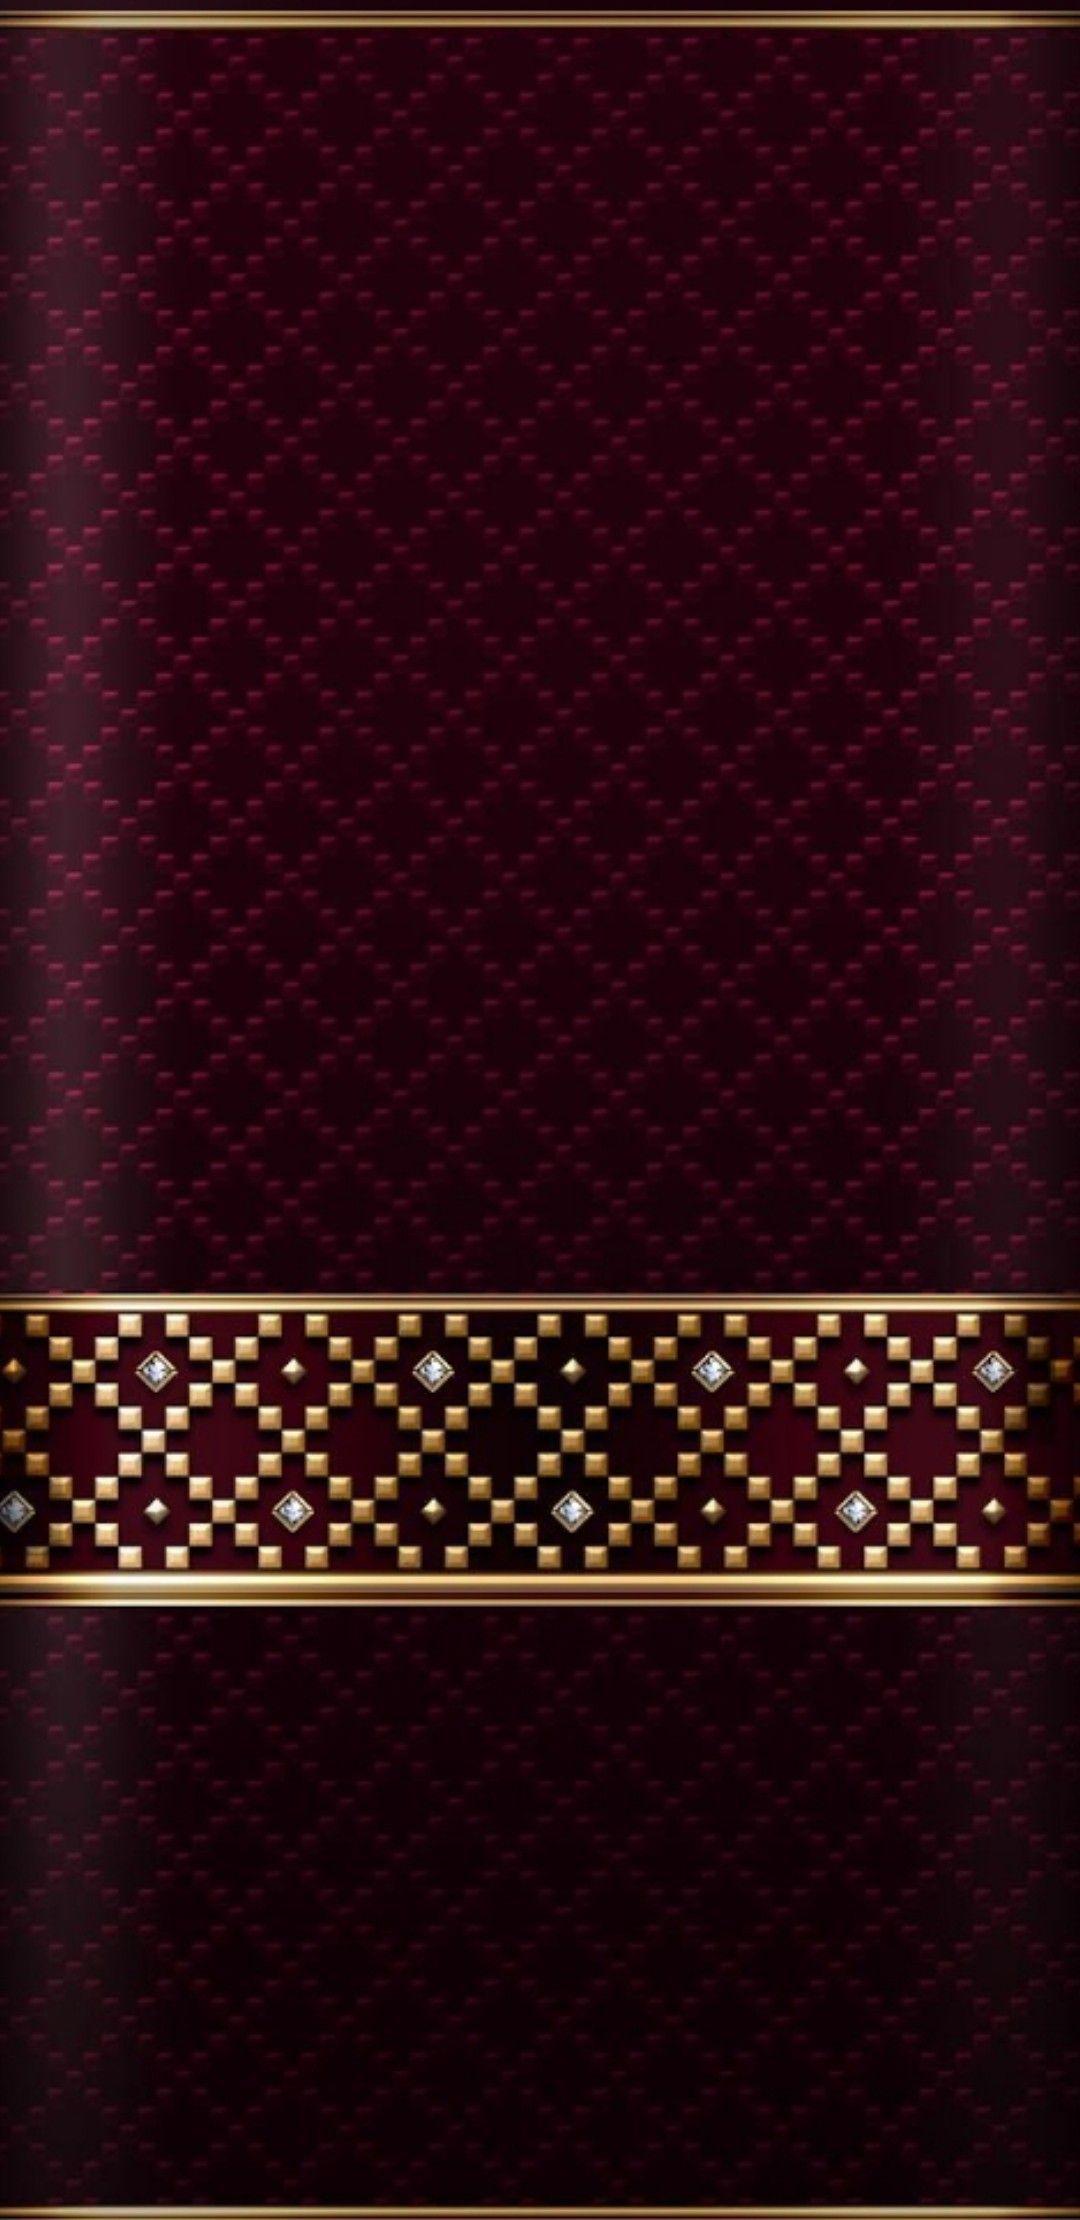 Rose Gold Phone Wallpaper